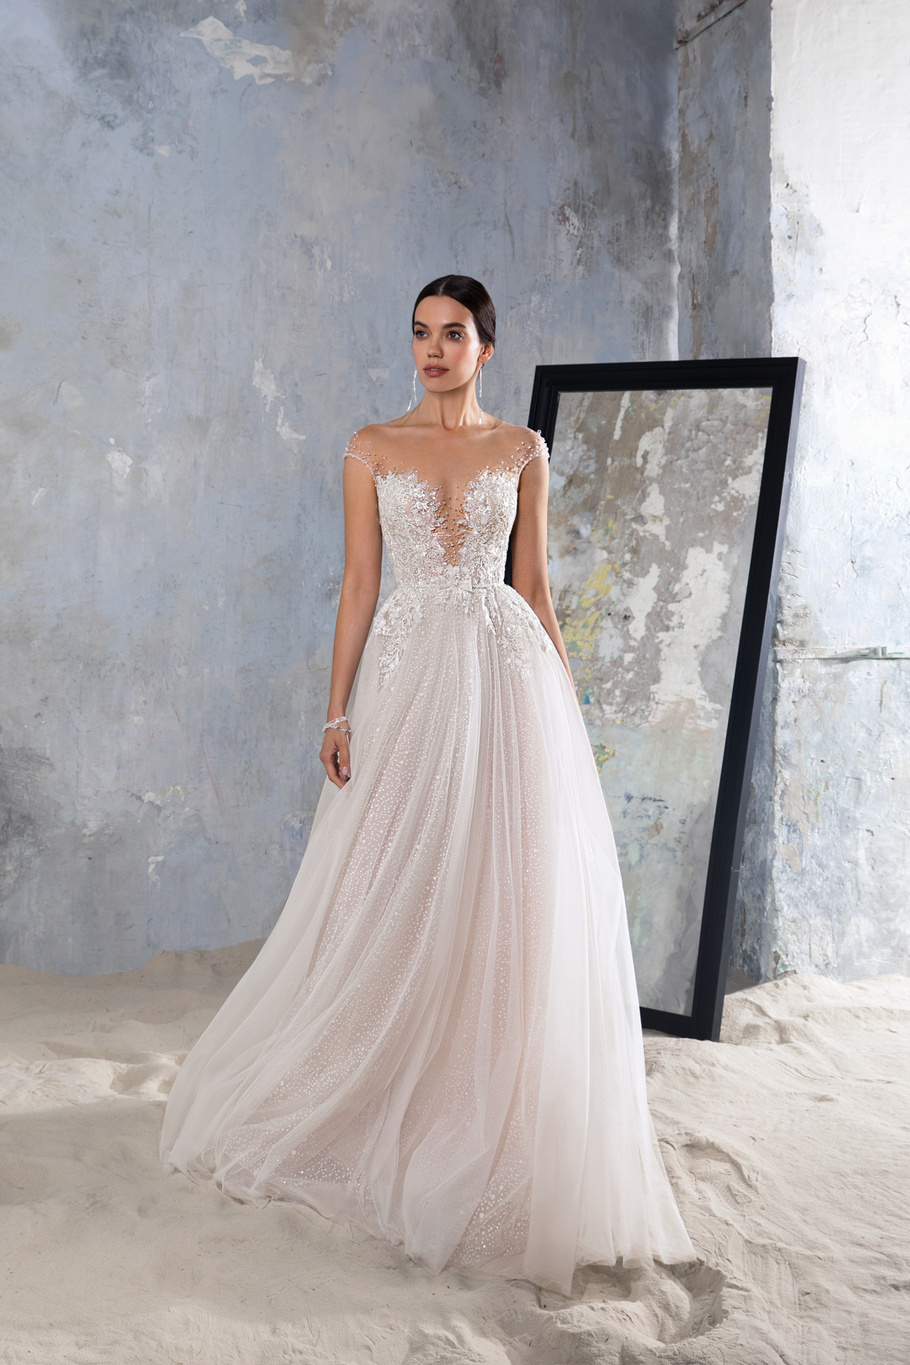 Купить свадебное платье «Ники» Секрет Споса из коллекции Блеск 2022 года в салоне «Мэри Трюфель»